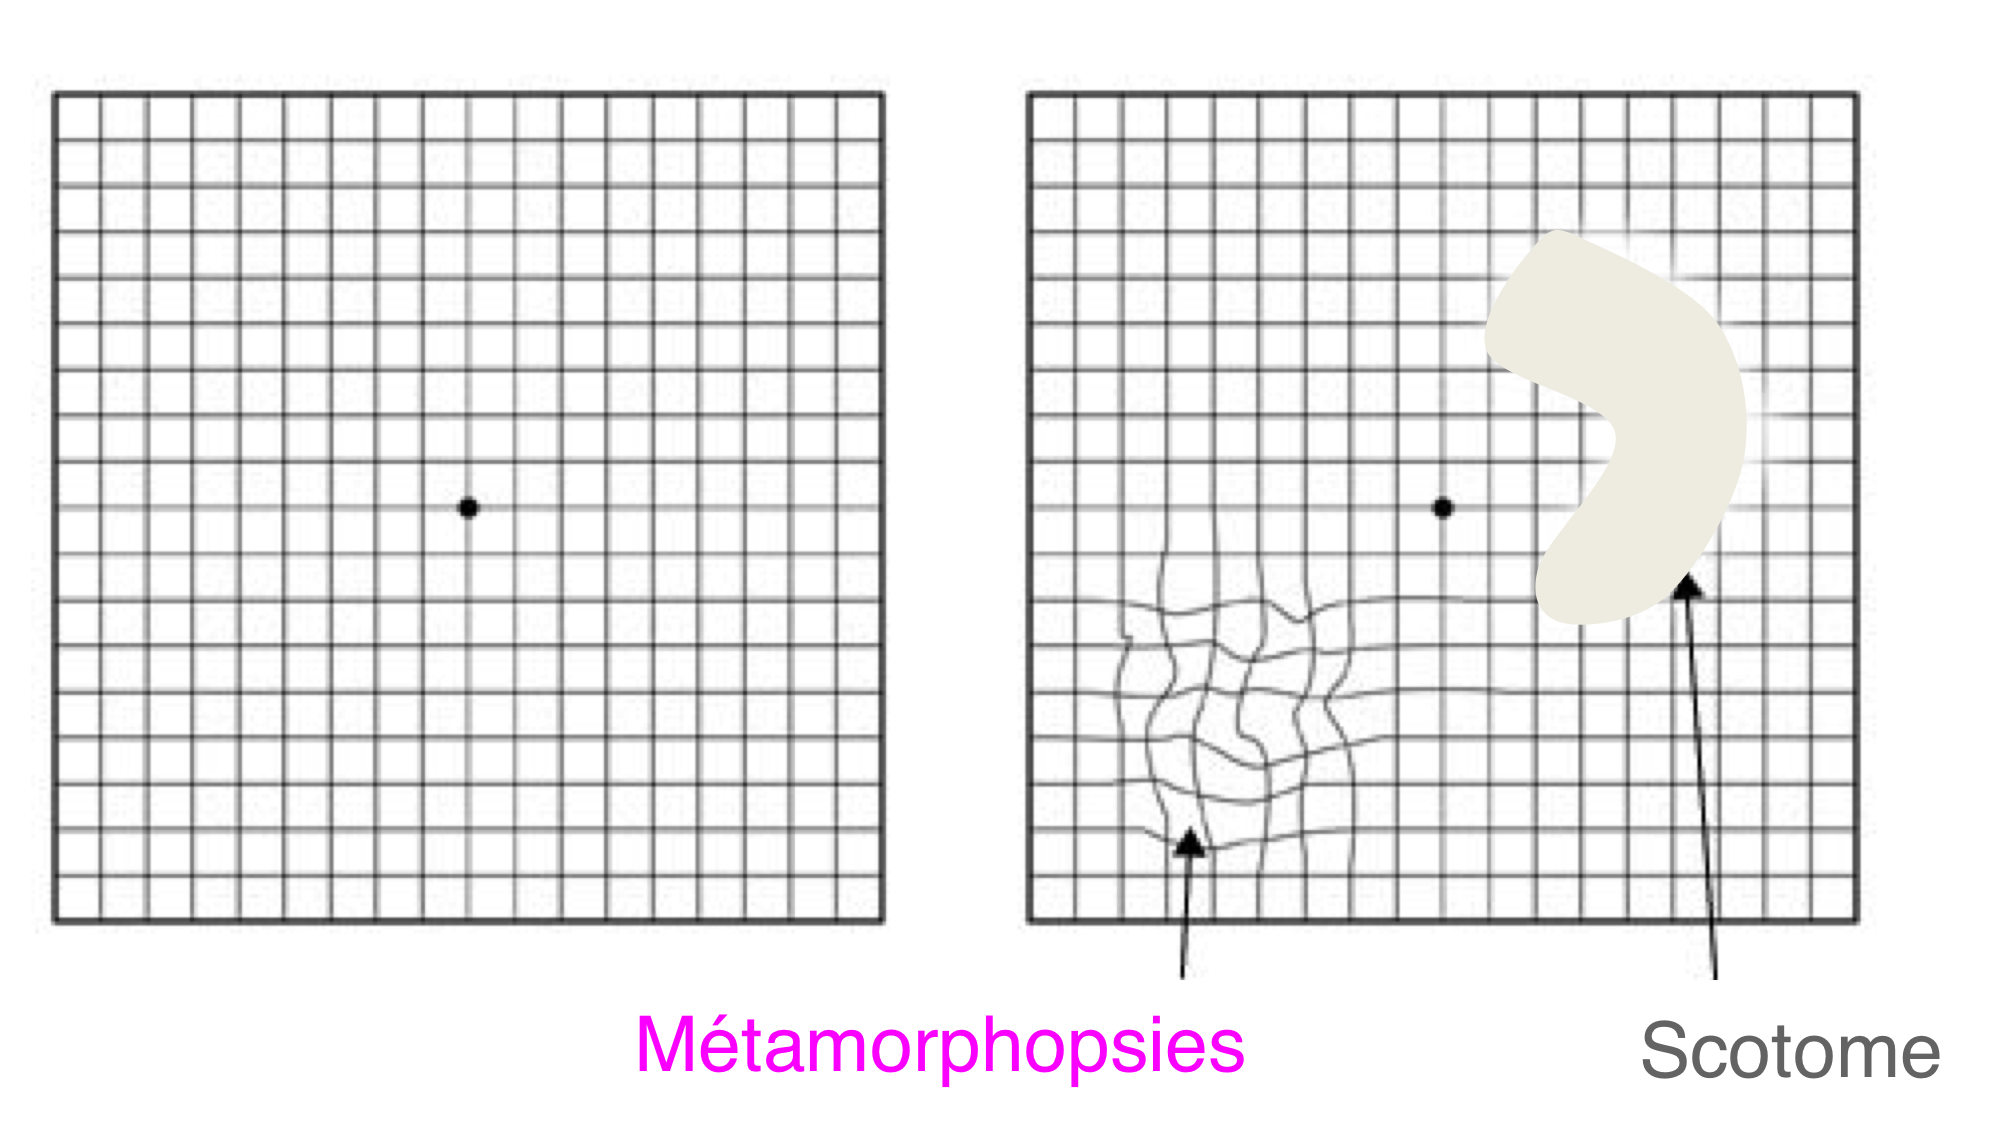 Les membranes épi-rétiniennes peuvent être à l'origine de déformations ondulantes des lignes droites (métamorphopsies) et/ou de zones de vision centrale floues (scotomes) que le test de la grille d'Amsler peut contribuer à dépister